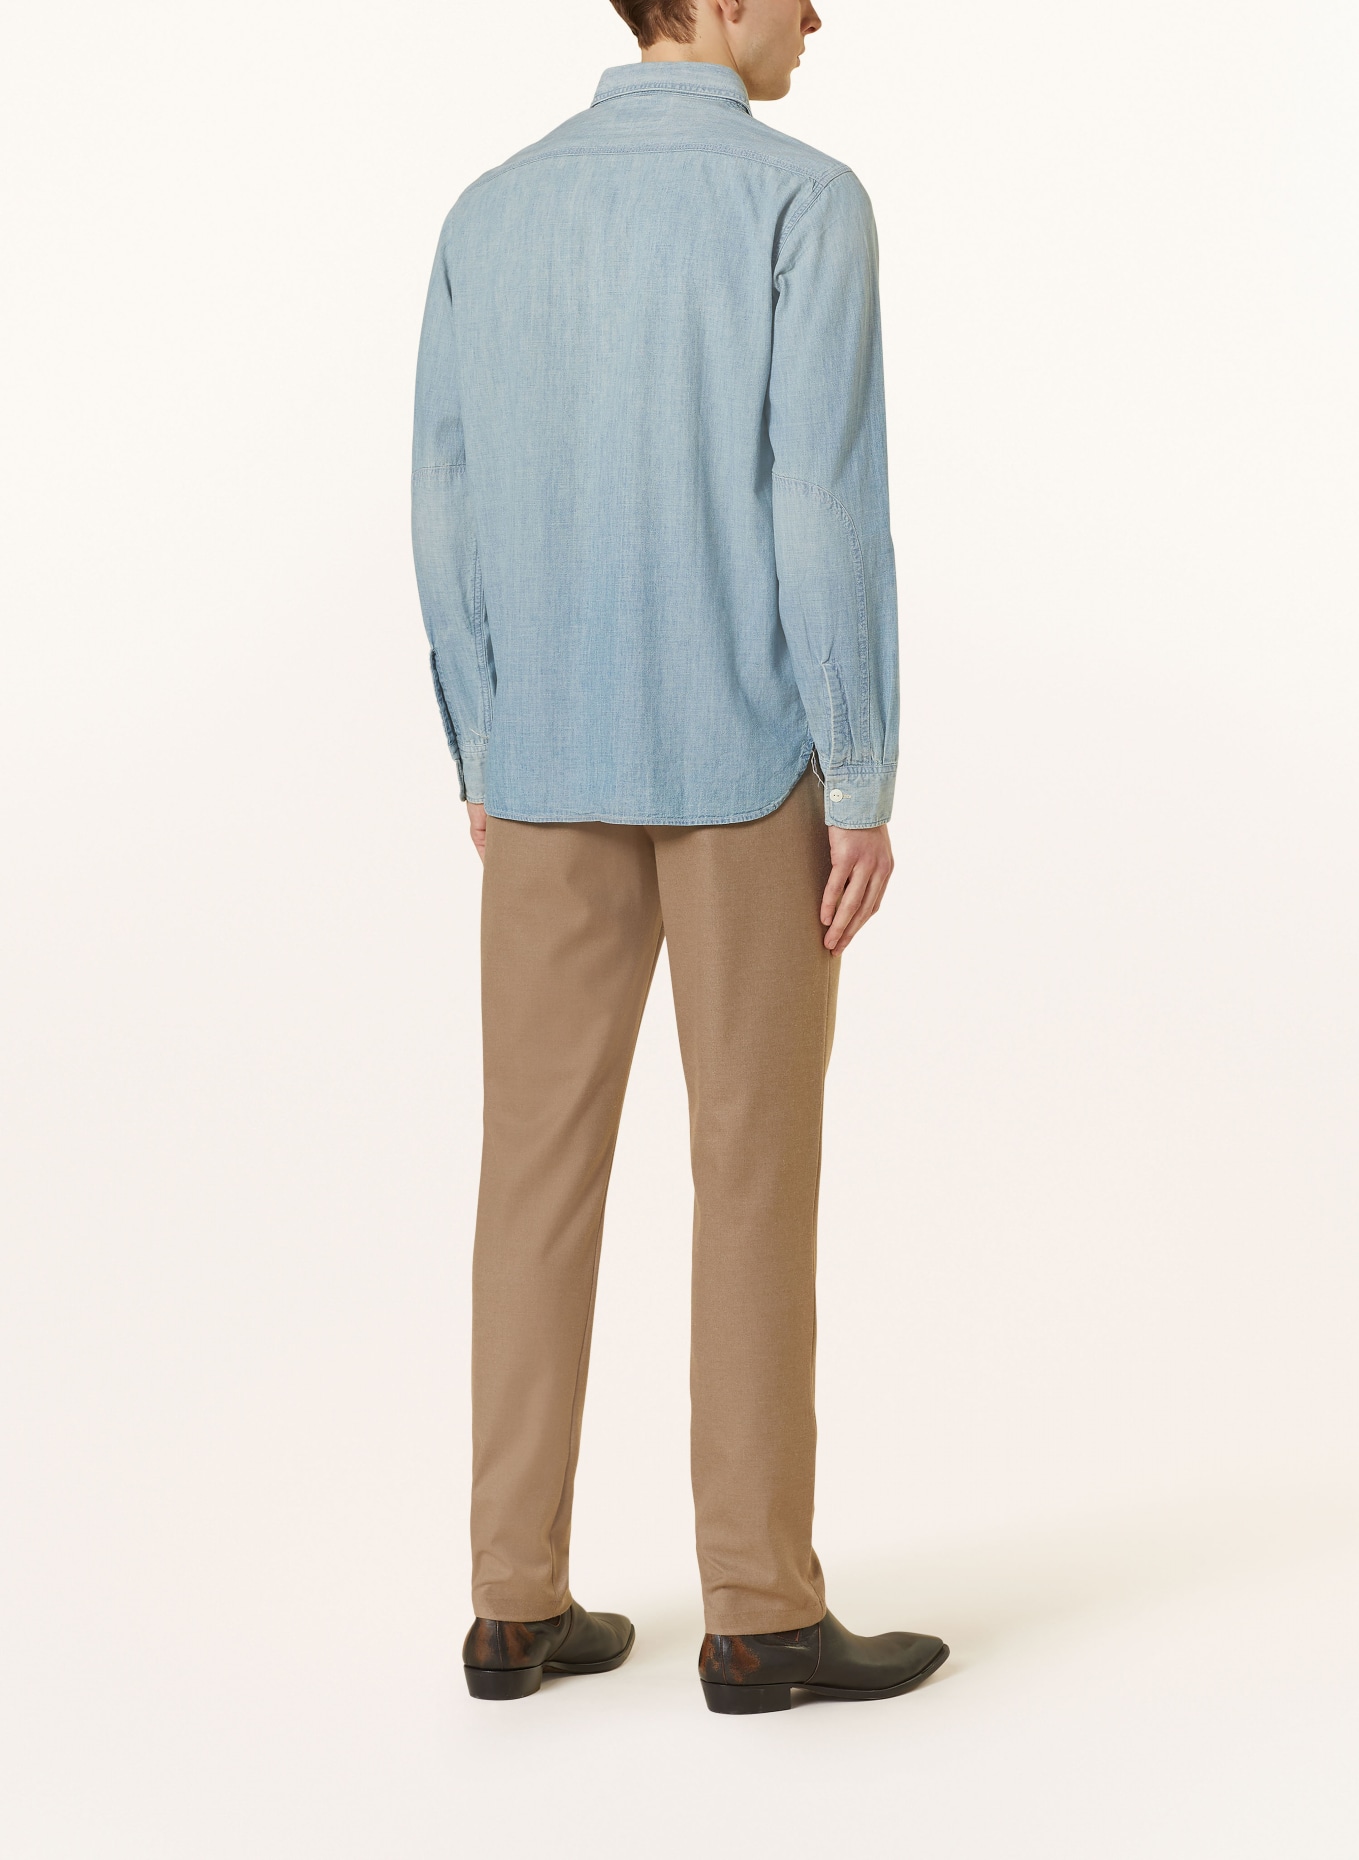 RRL Shirt regular fit in denim look, Color: LIGHT BLUE (Image 3)